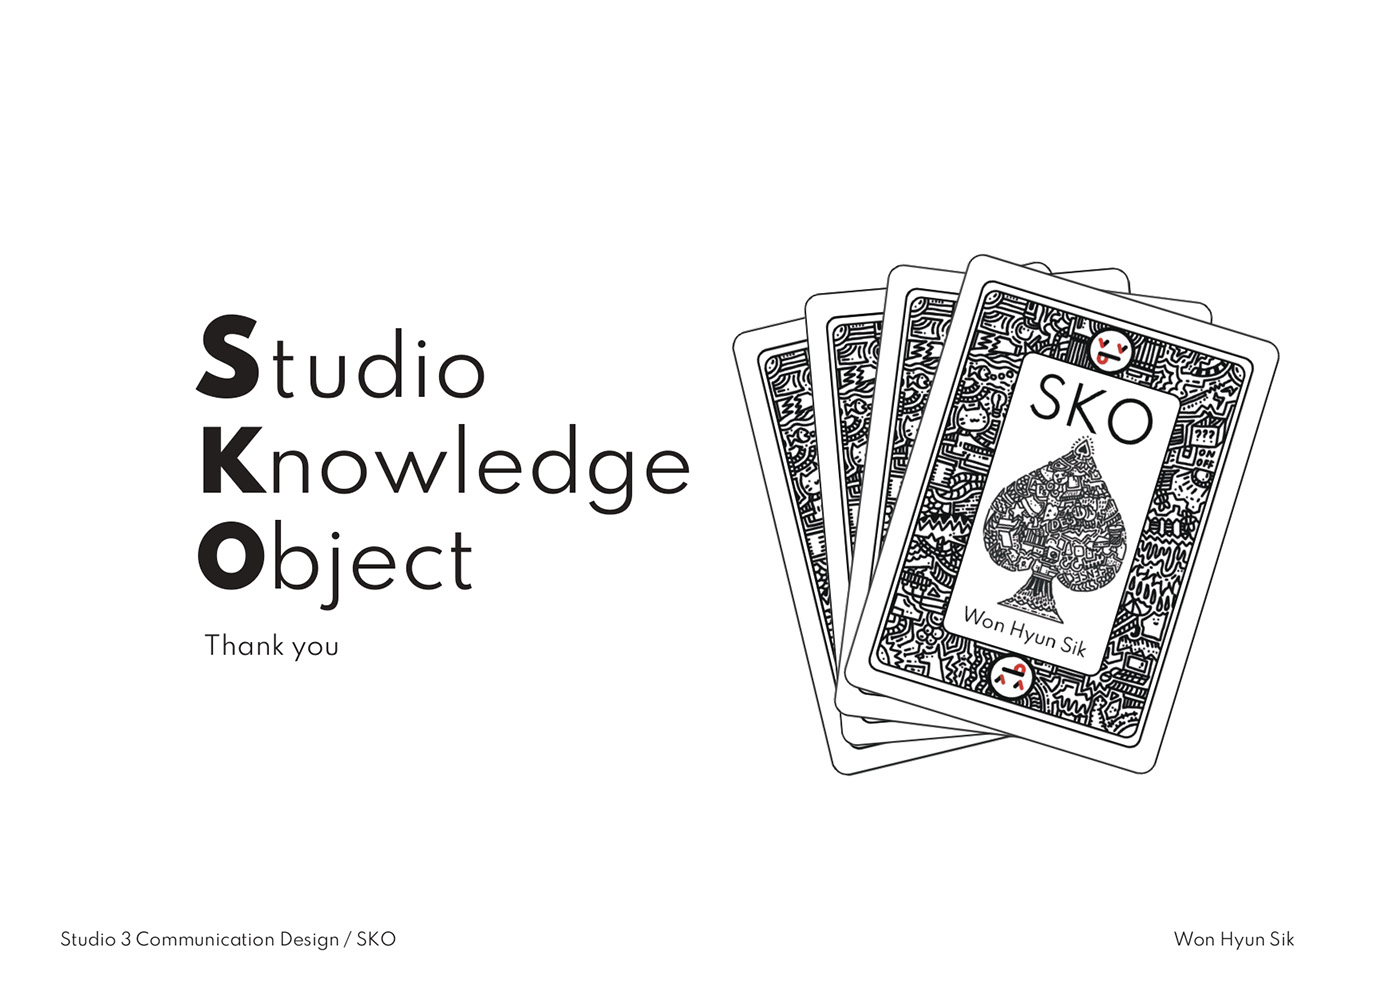 Bicycle bicyclecards card carddesign cards design designprinciples Poker pokercards